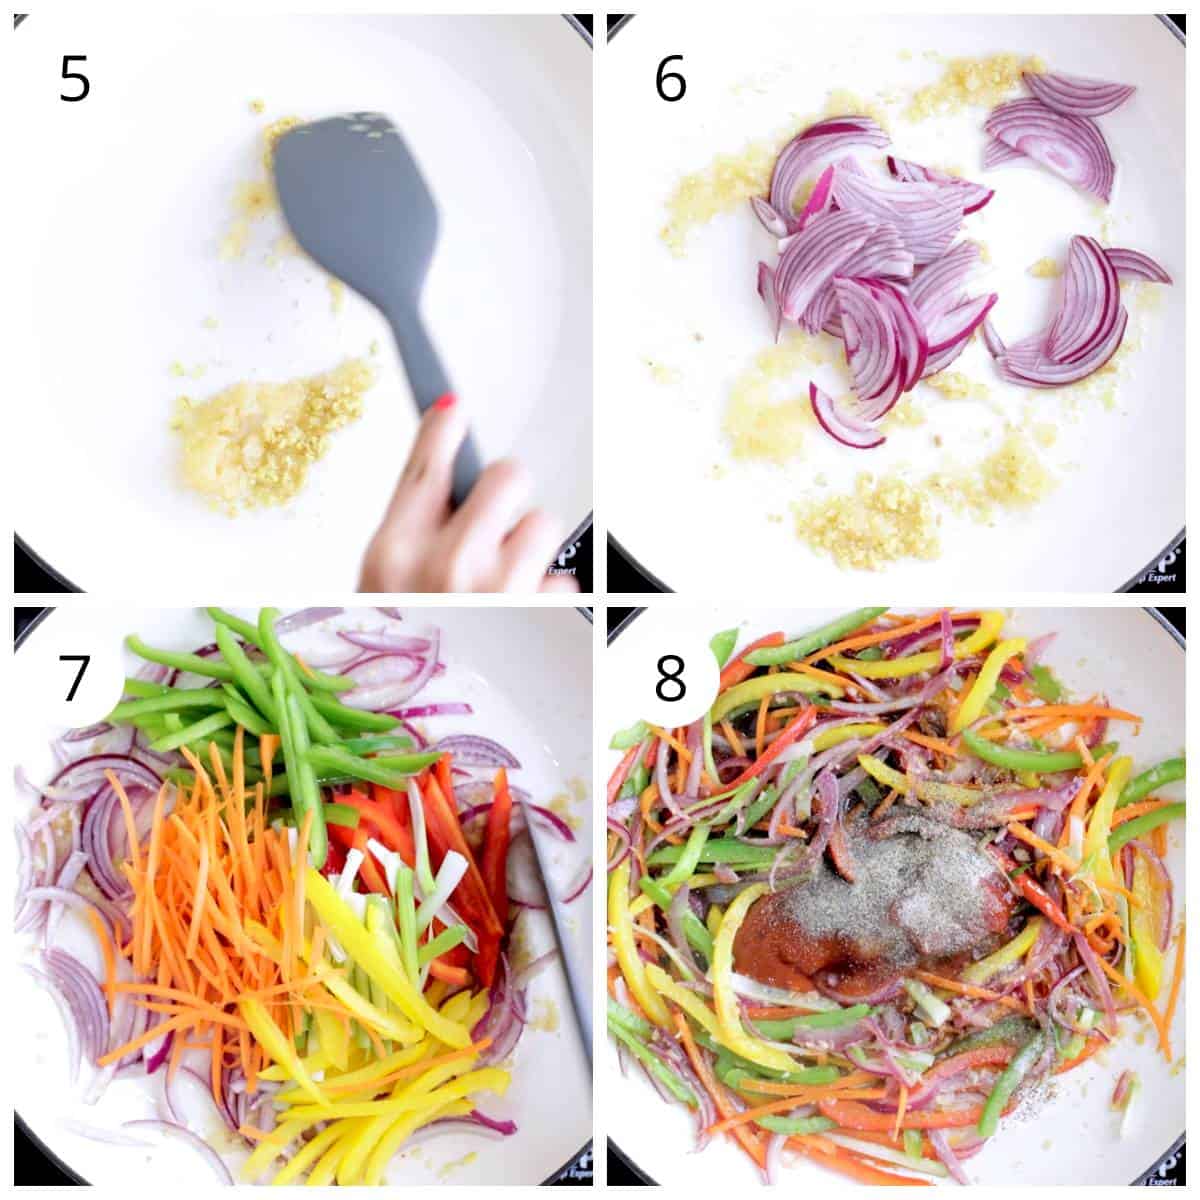 Steps for stir frying vegetables for Veg Noodles